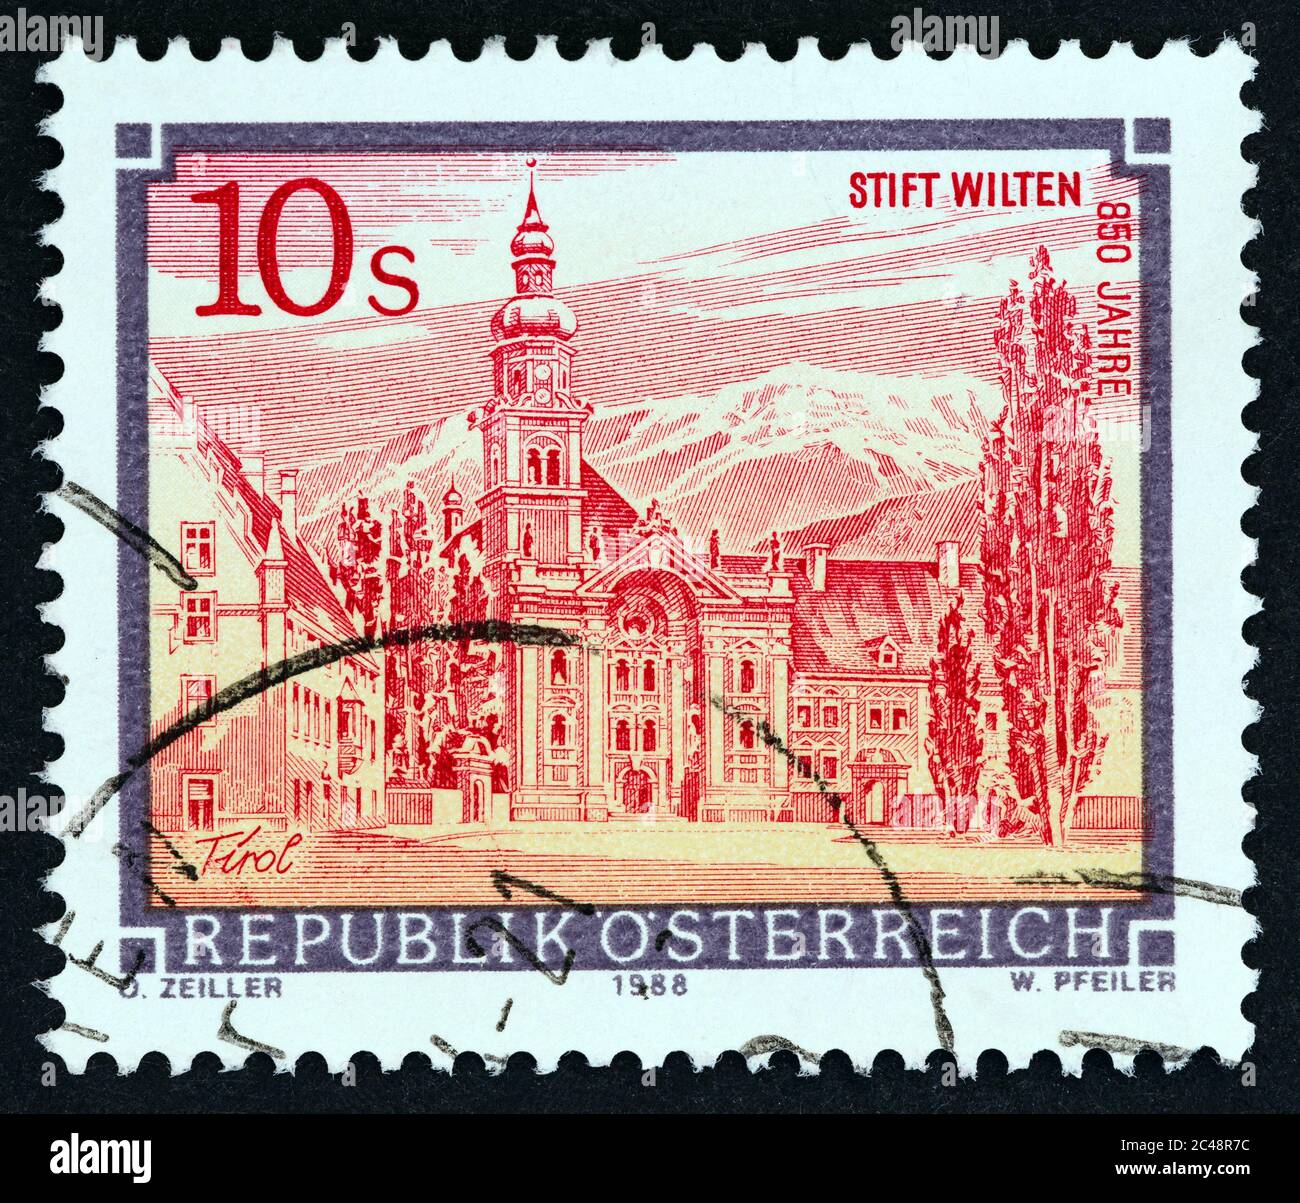 ÖSTERREICH - UM 1988: Eine in Österreich gedruckte Briefmarke aus der Ausgabe 'Kloster und Klöster' zeigt das Stift Wilten, Innsbruck, um 1988. Stockfoto